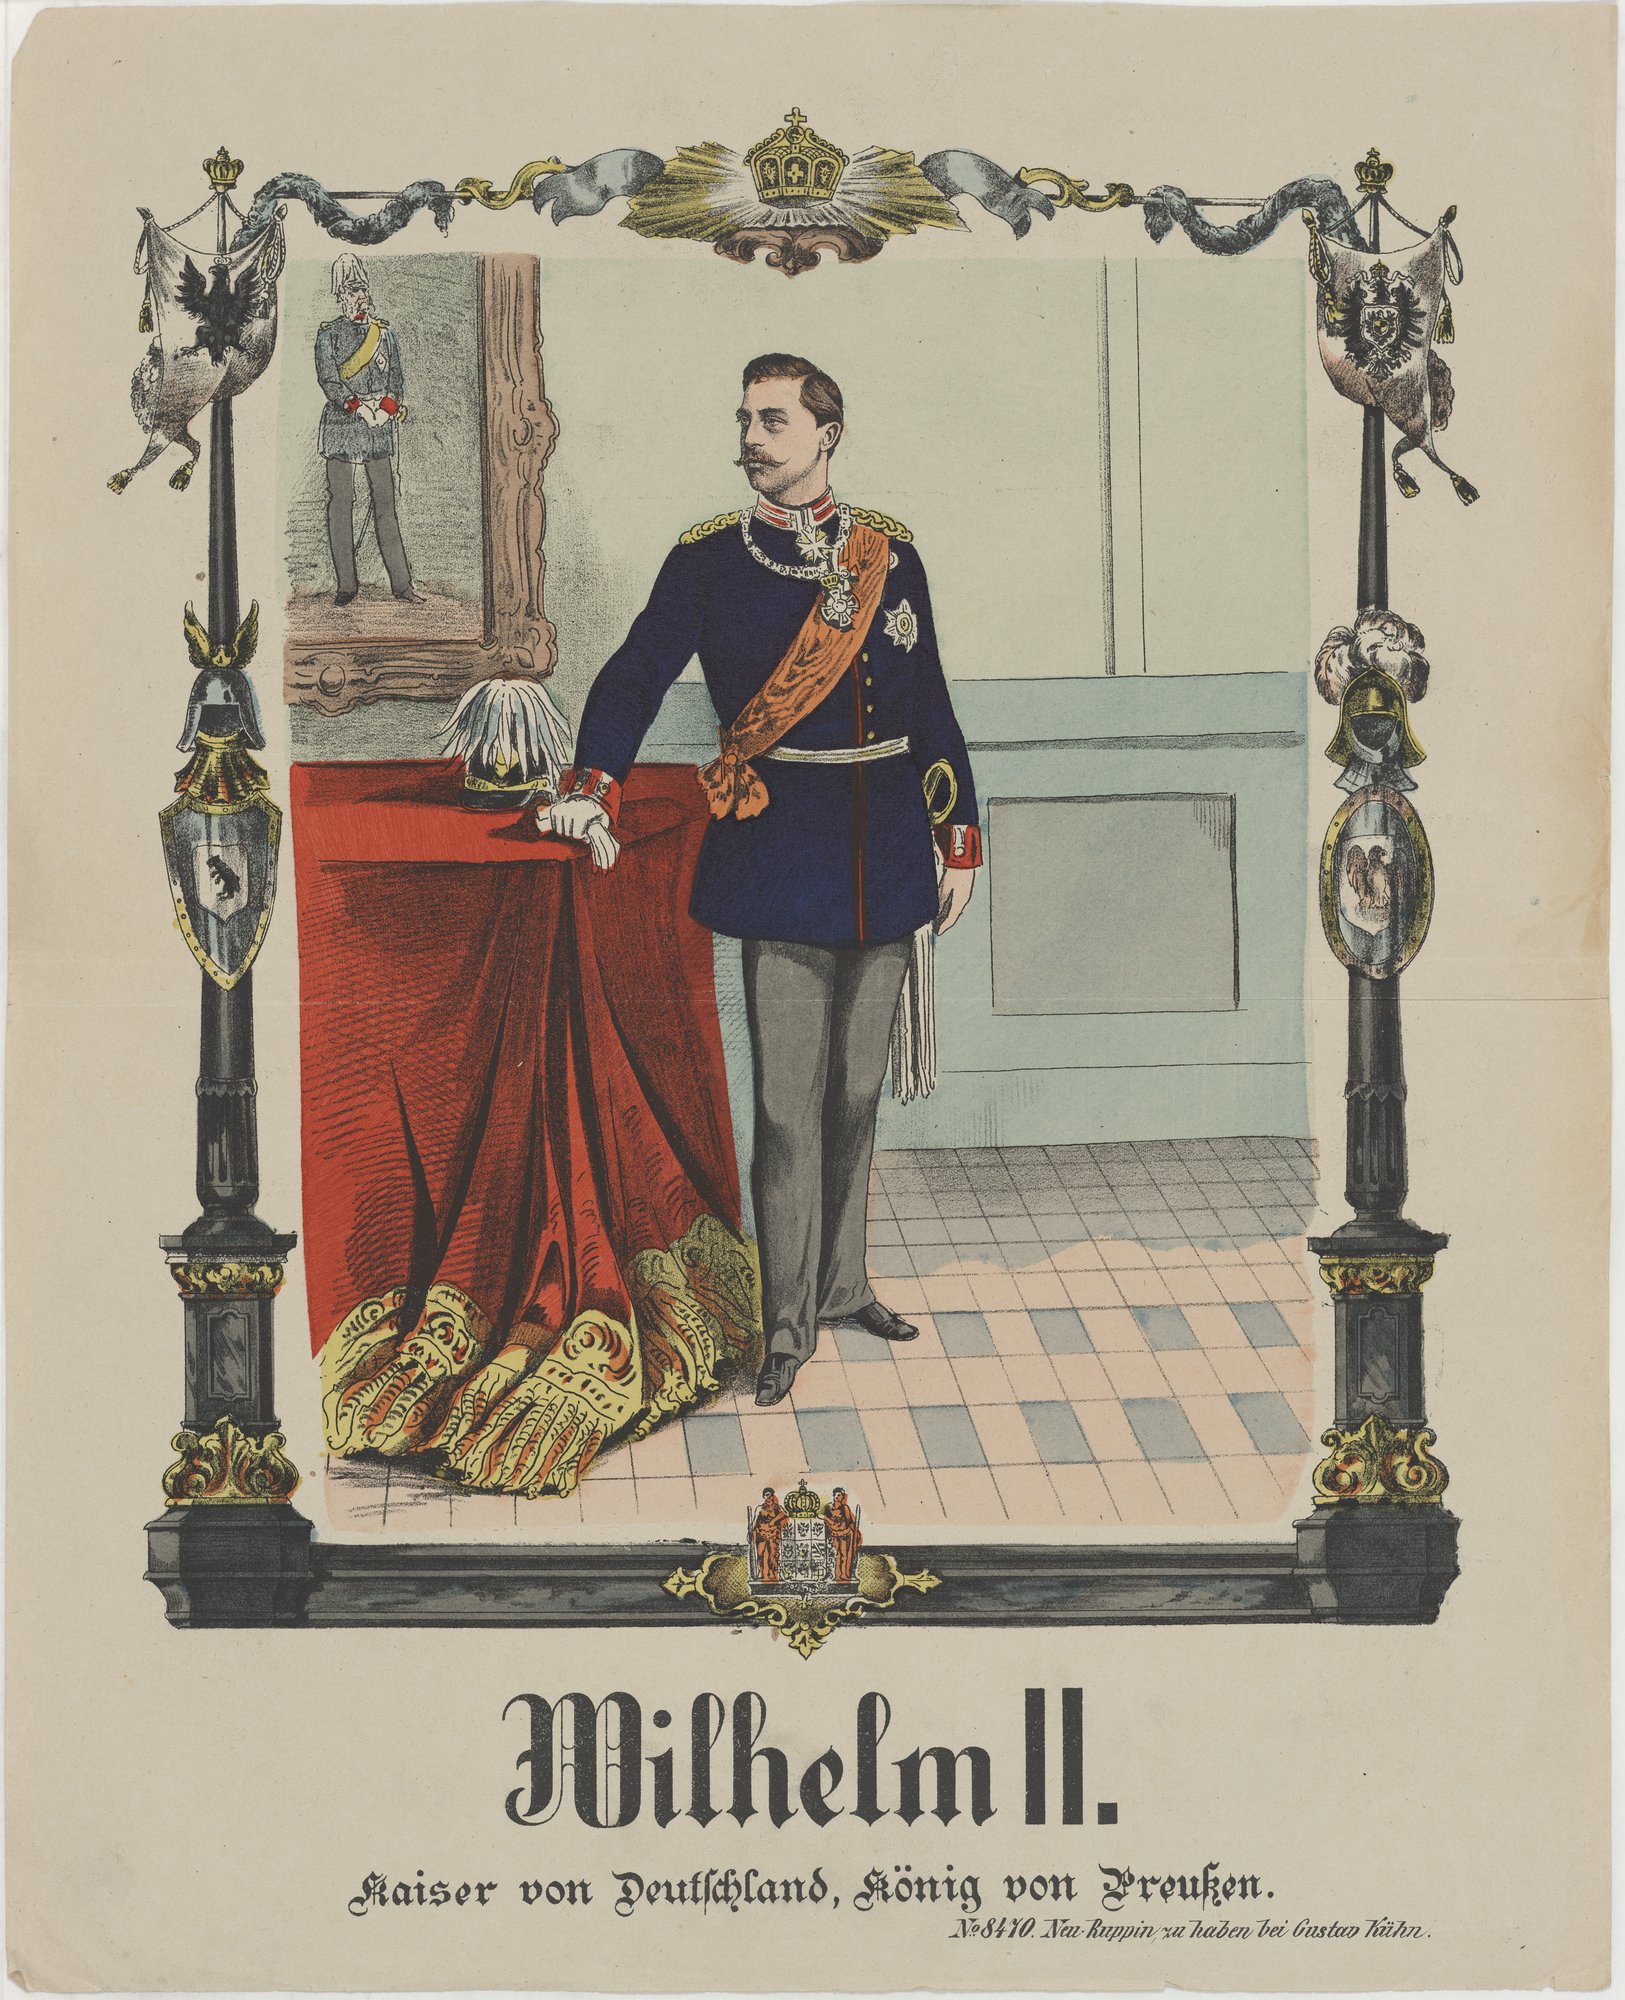 Wilhelm II./ Kaiser von Deutschland, König von Preußen. (Kulturstiftung Sachsen-Anhalt Public Domain Mark)